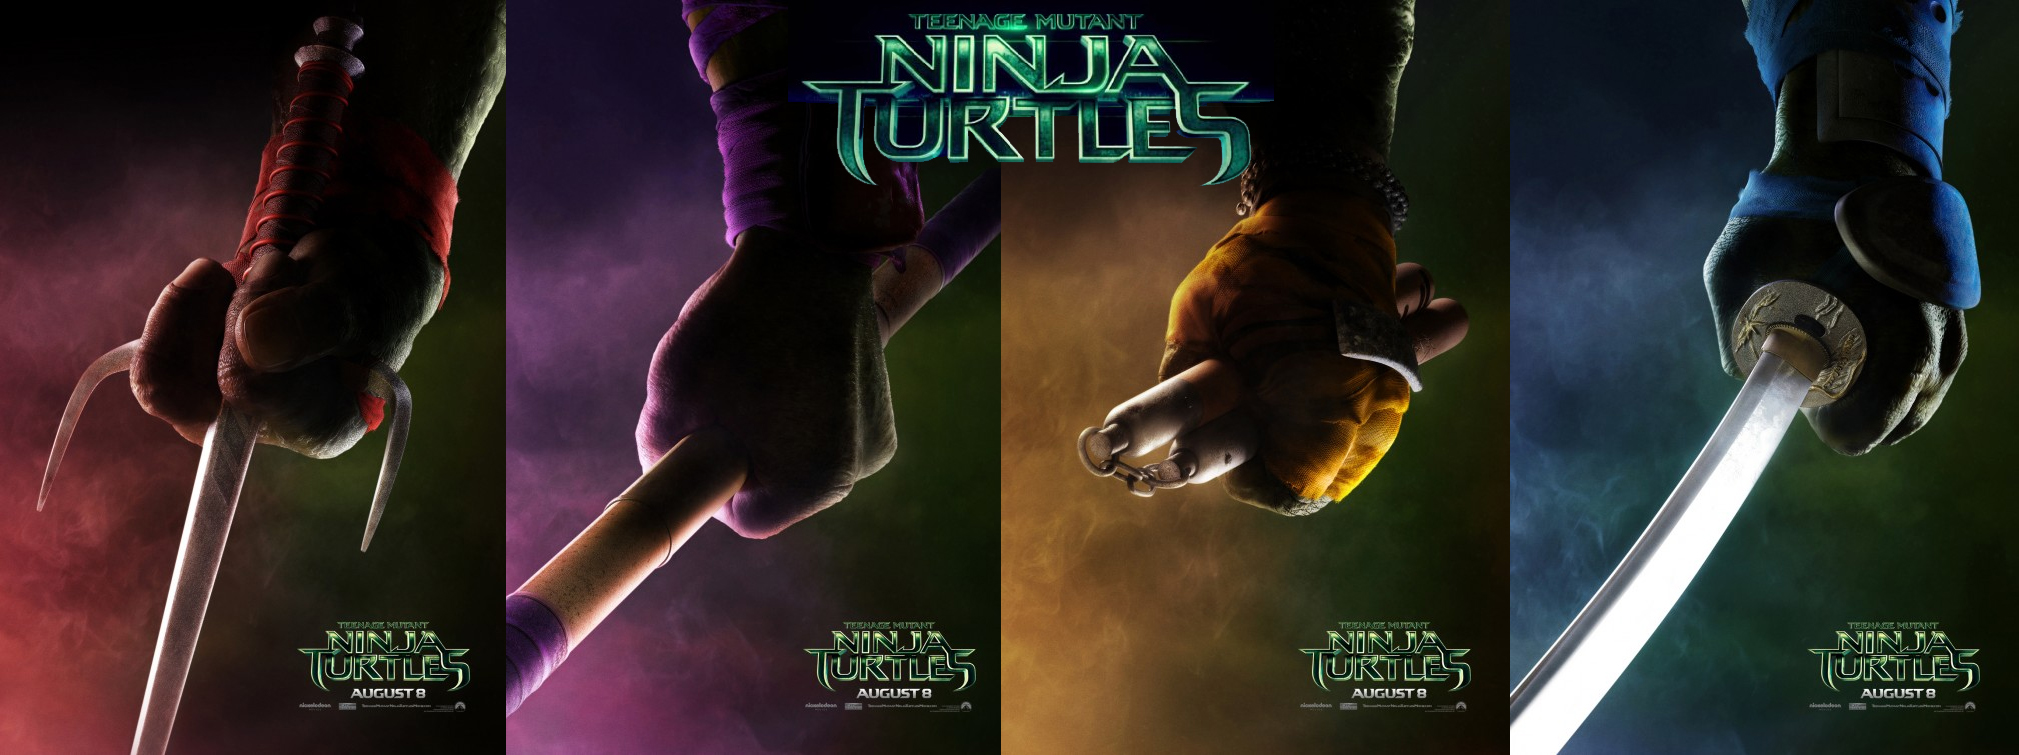 Teenage Mutant Ninja Turtles - Teaser Posters